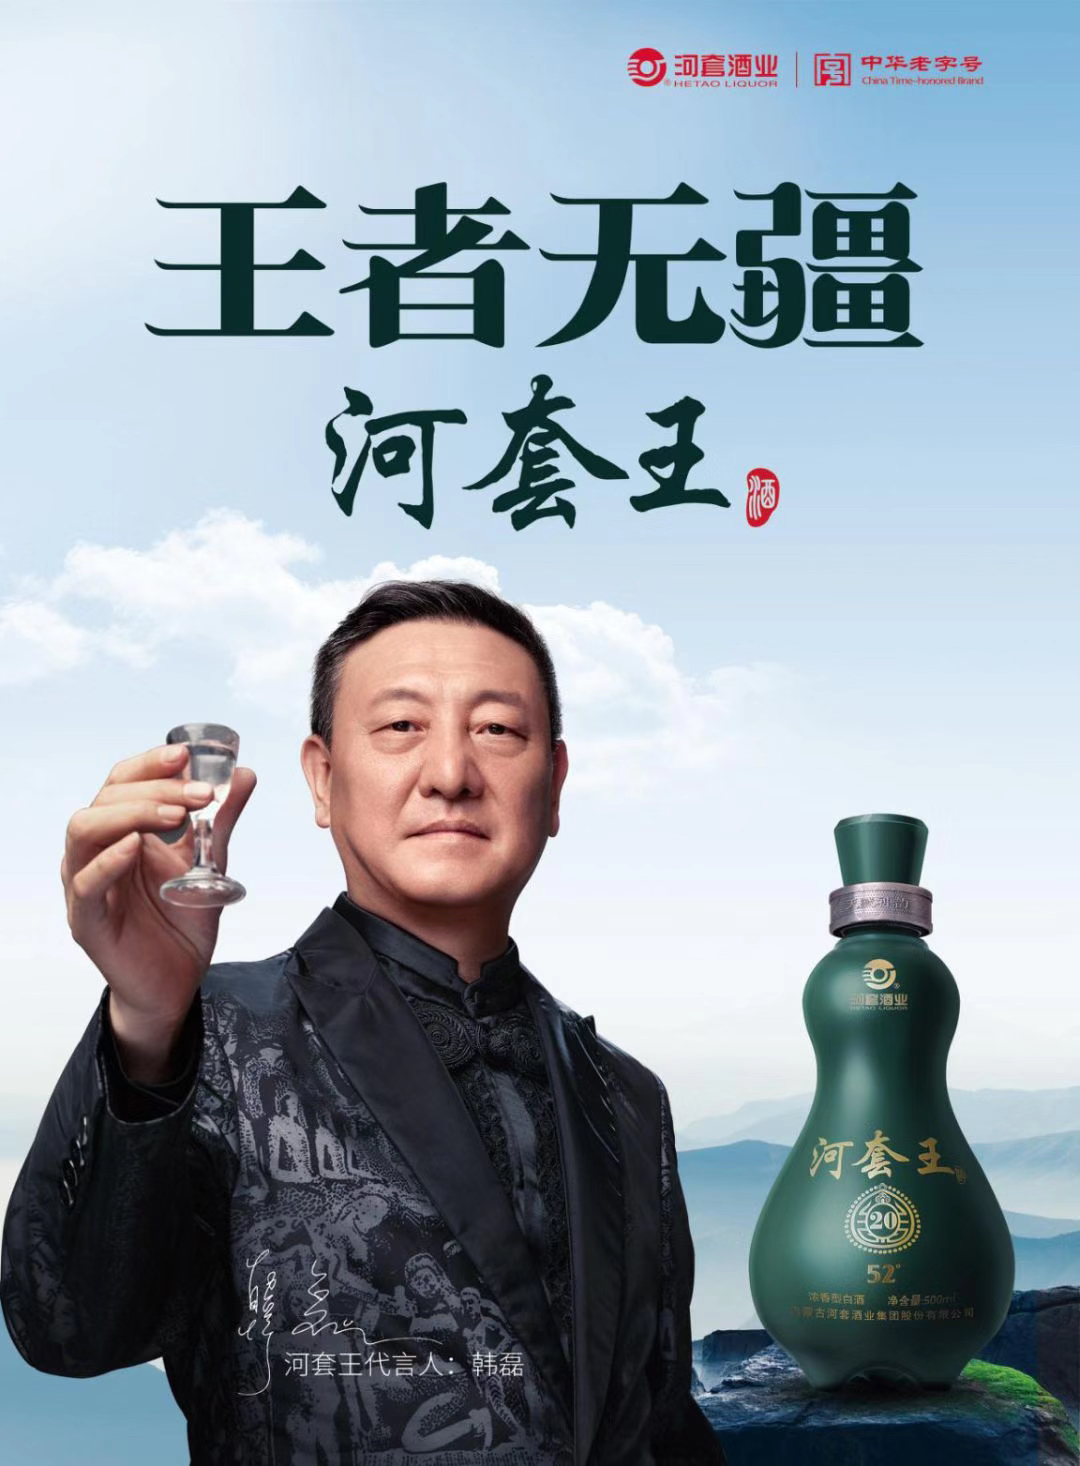 河套王酒广告图片